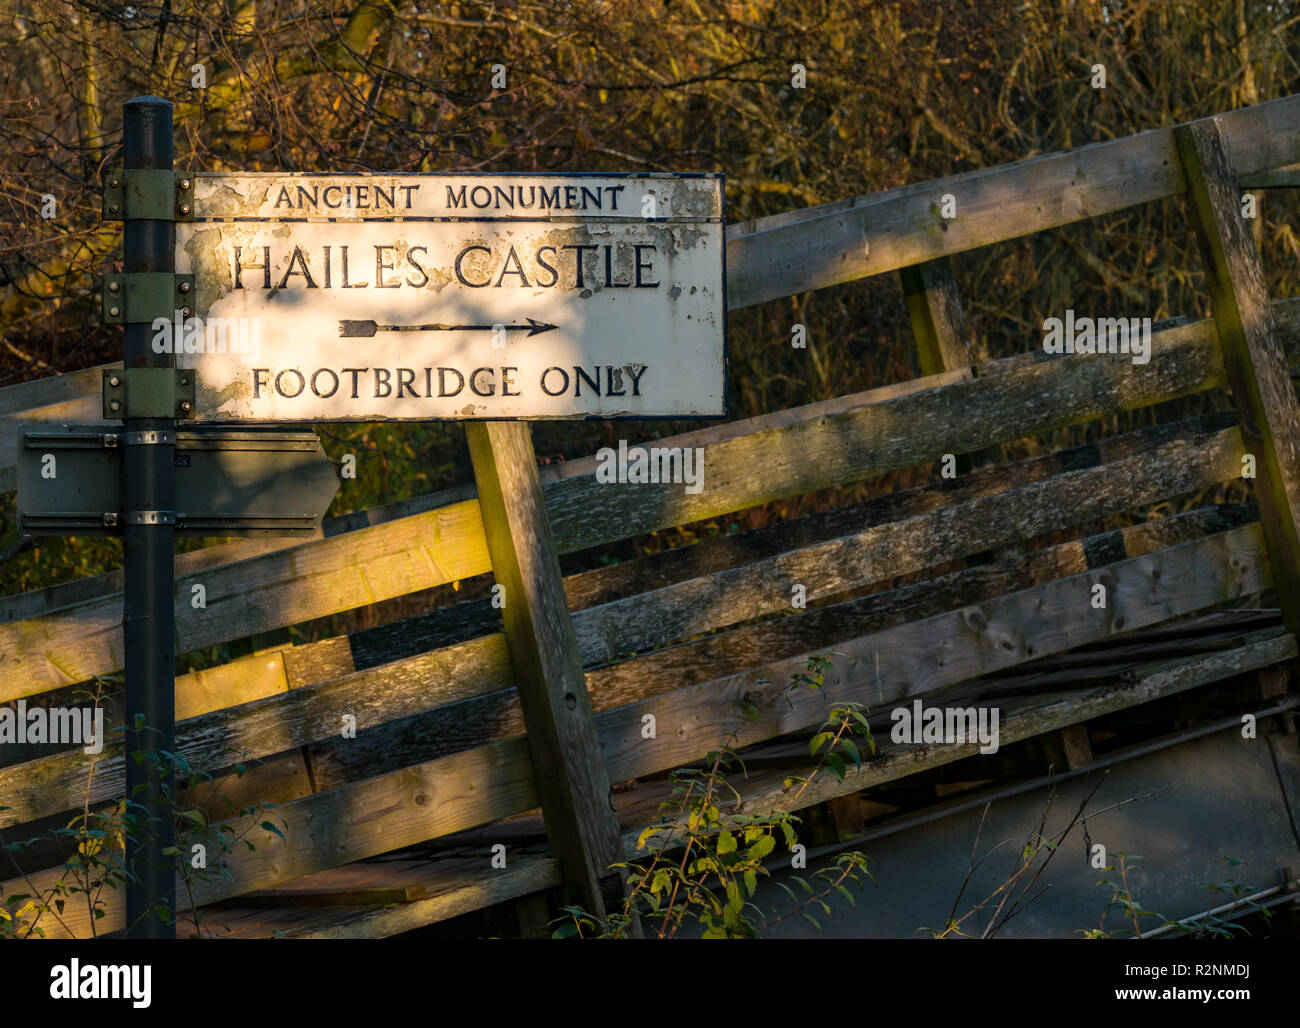 Monument ancien direction de Hailes castle plus de passerelle, East Lothian, Scotland, UK Banque D'Images